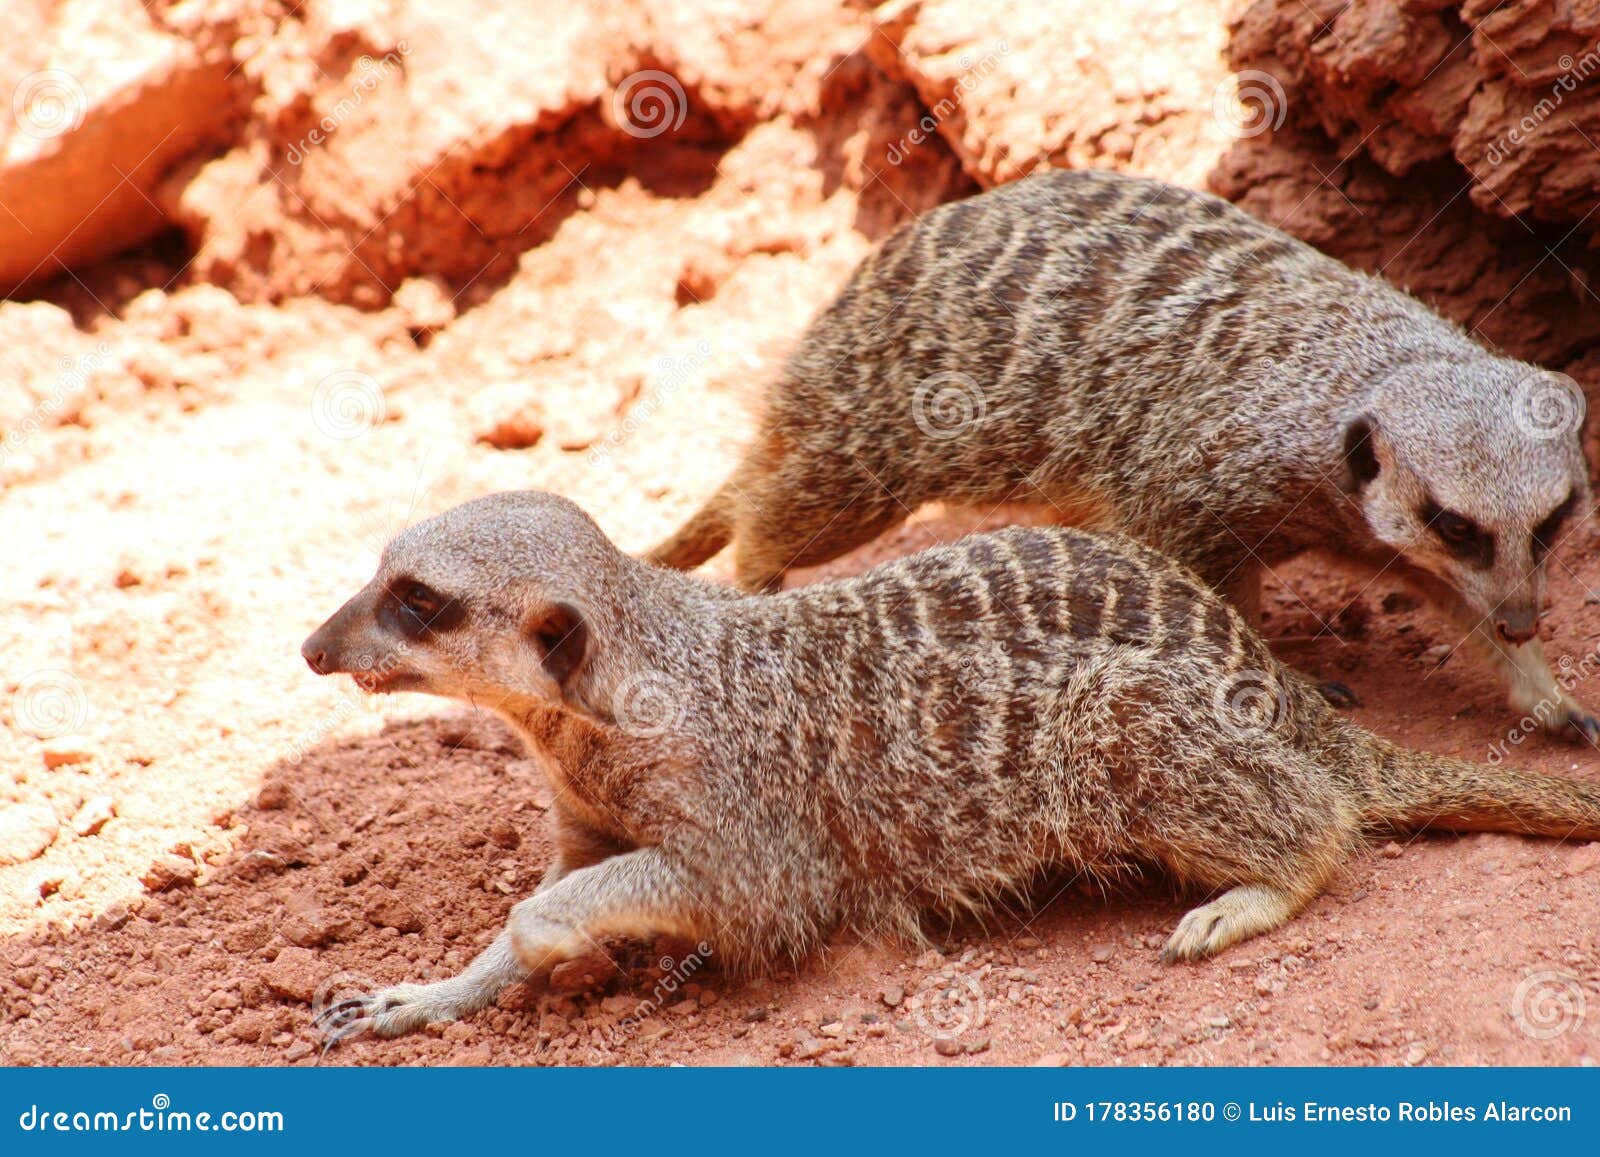 two meerkats suricates emerges looking food